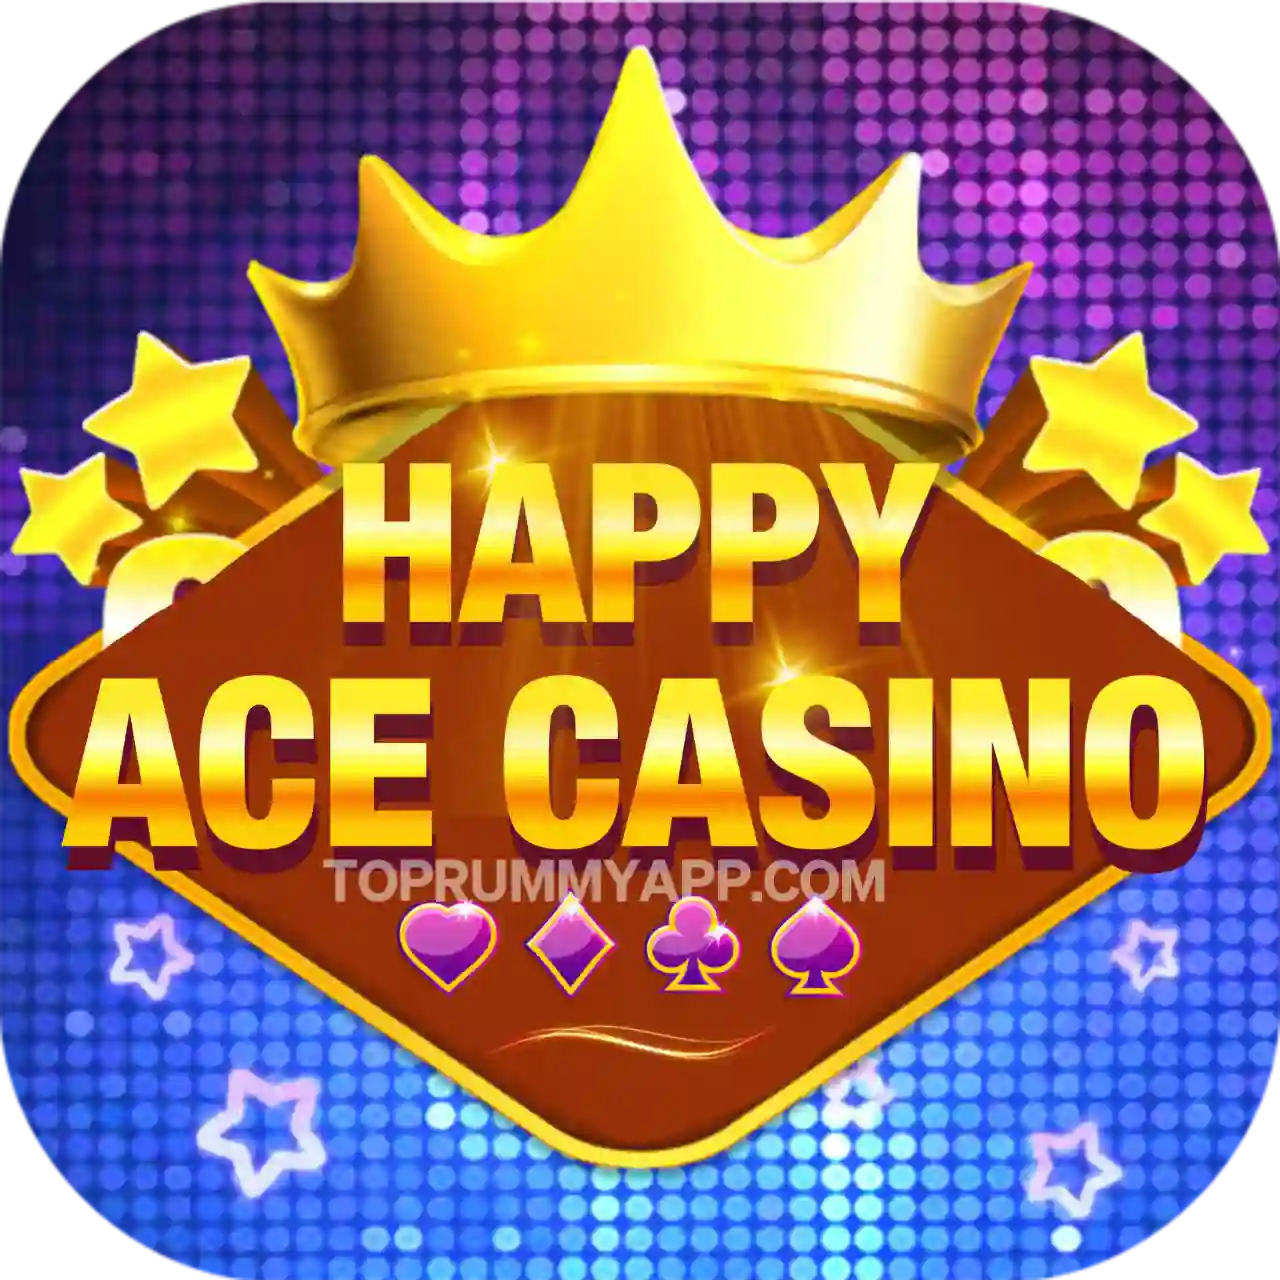 Happy Ace Casino Apk Download - All Car Roulette App List 51 Bonus